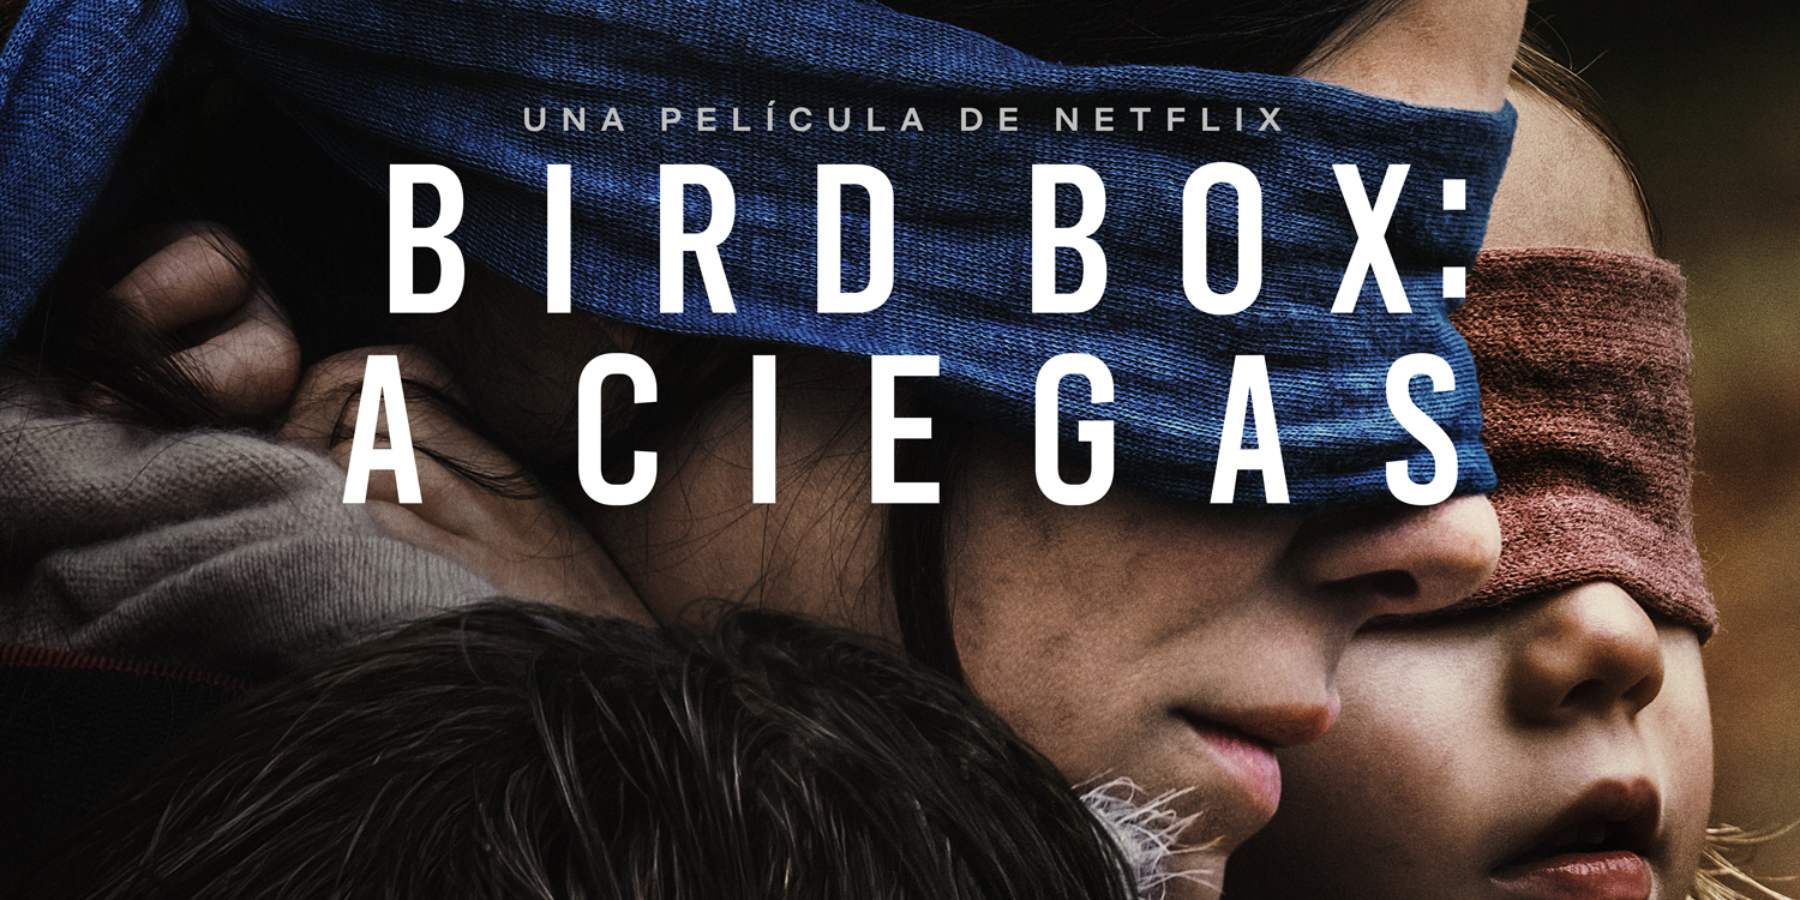 Netflix estrena nuevo trailer de Bird Box